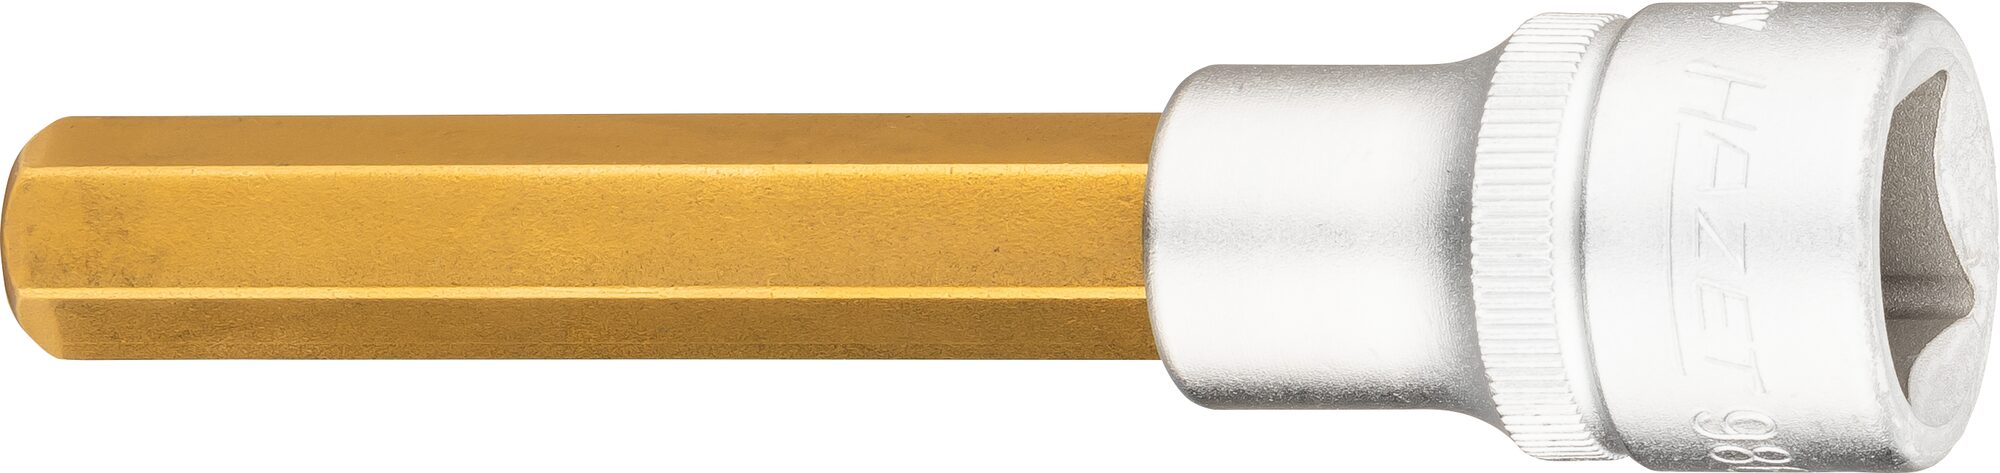 HAZET Schraubendreher-Steckschlüsseleinsatz 986LG-11 · Vierkant hohl 12,5 mm (1/2 Zoll) · Innen Sechskant Profil · 11 mm